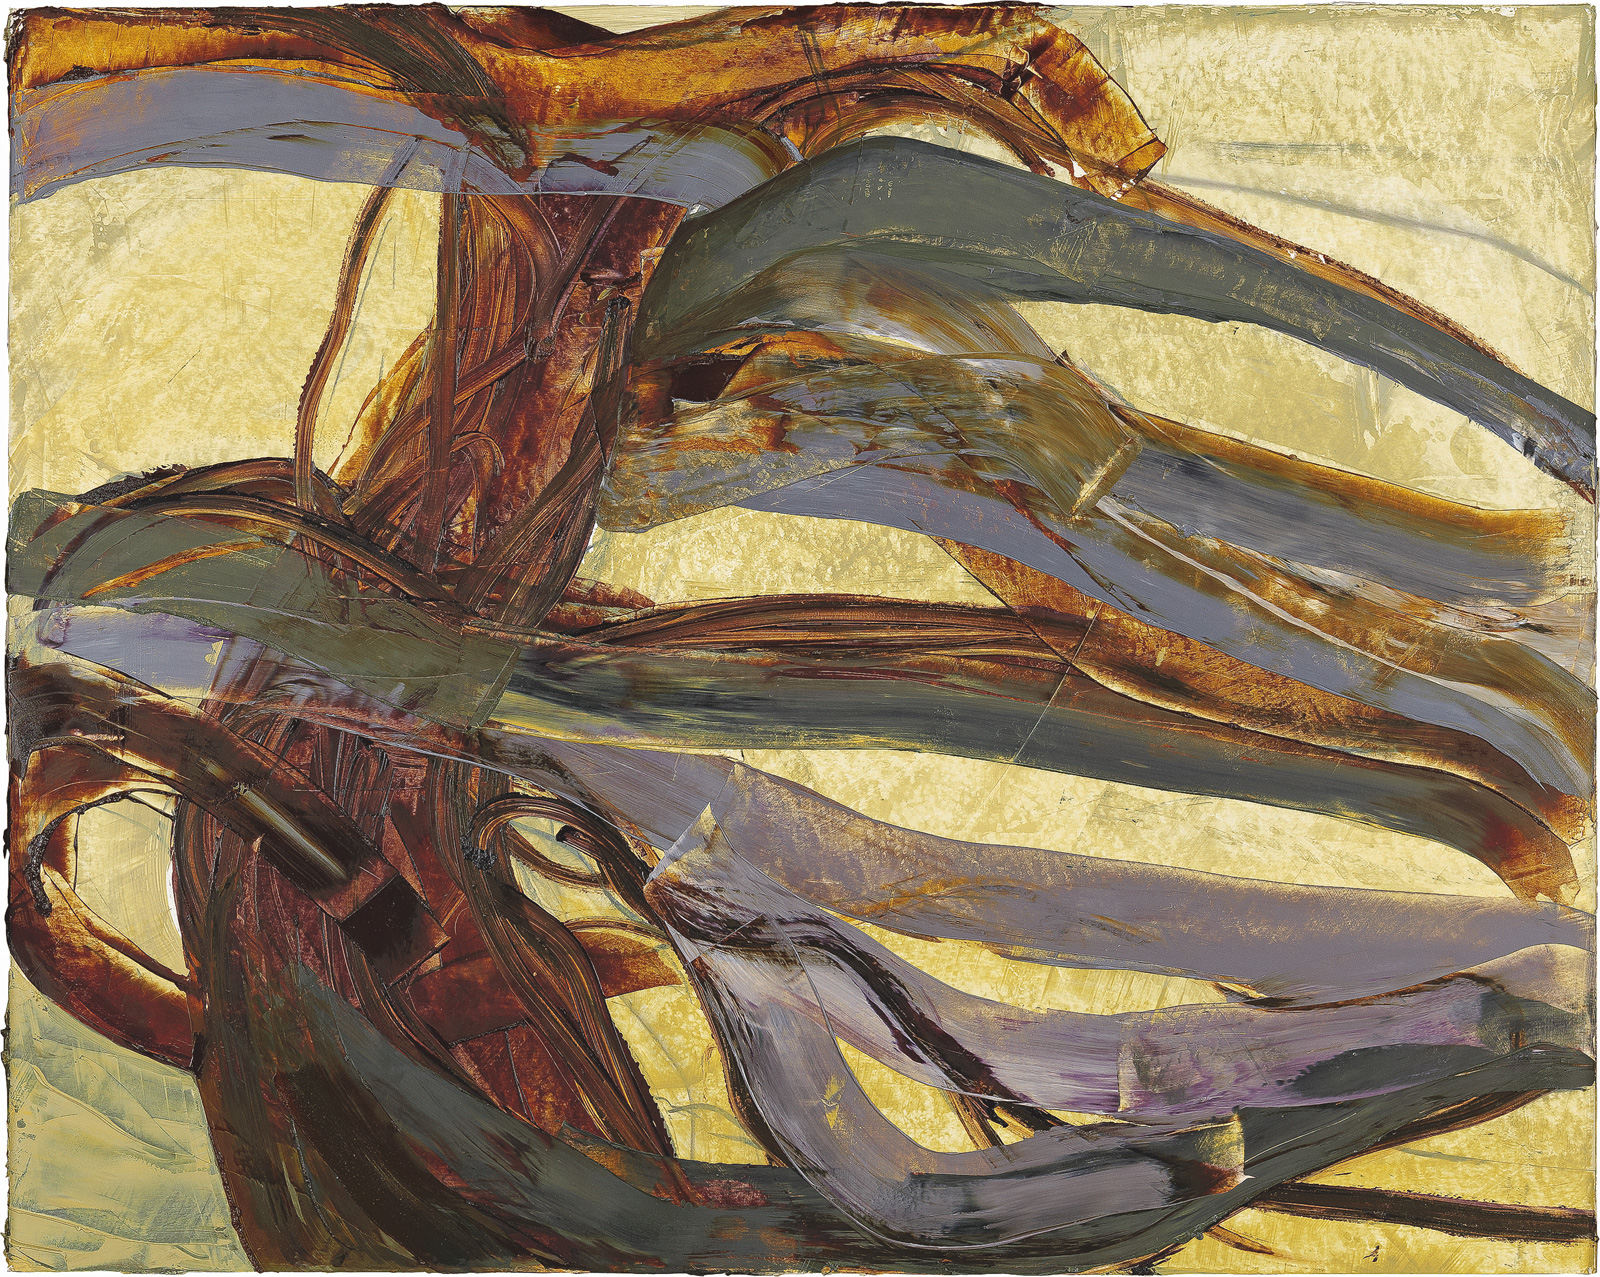 Graubuche, 2007, Öl auf Pappe, 81 x 102 cm